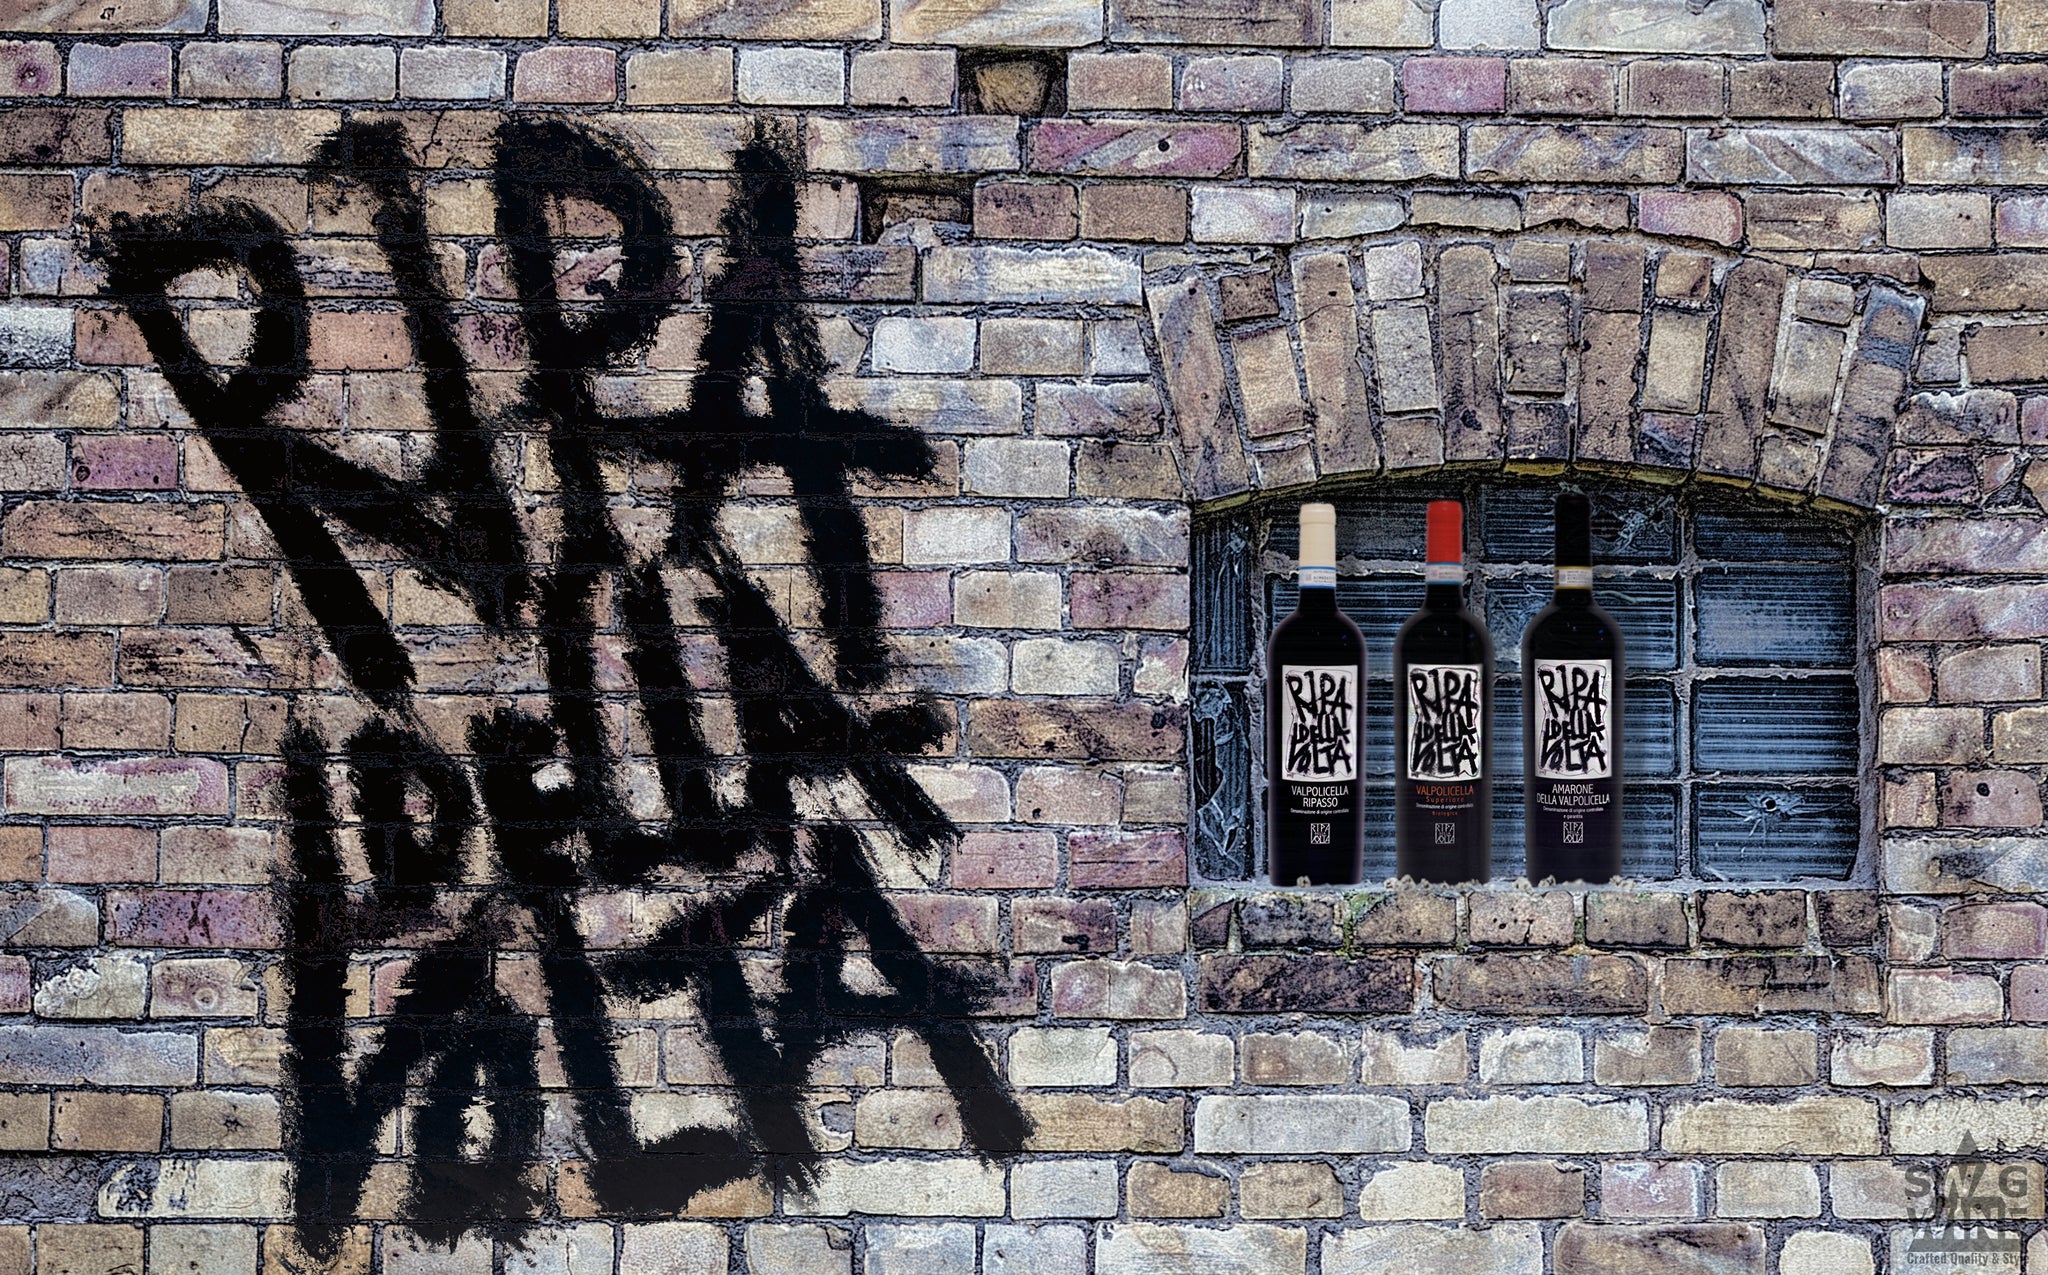 Ripa della Volta Ottella Amarone della Valpolicella DOCG Graffiti Swagwine